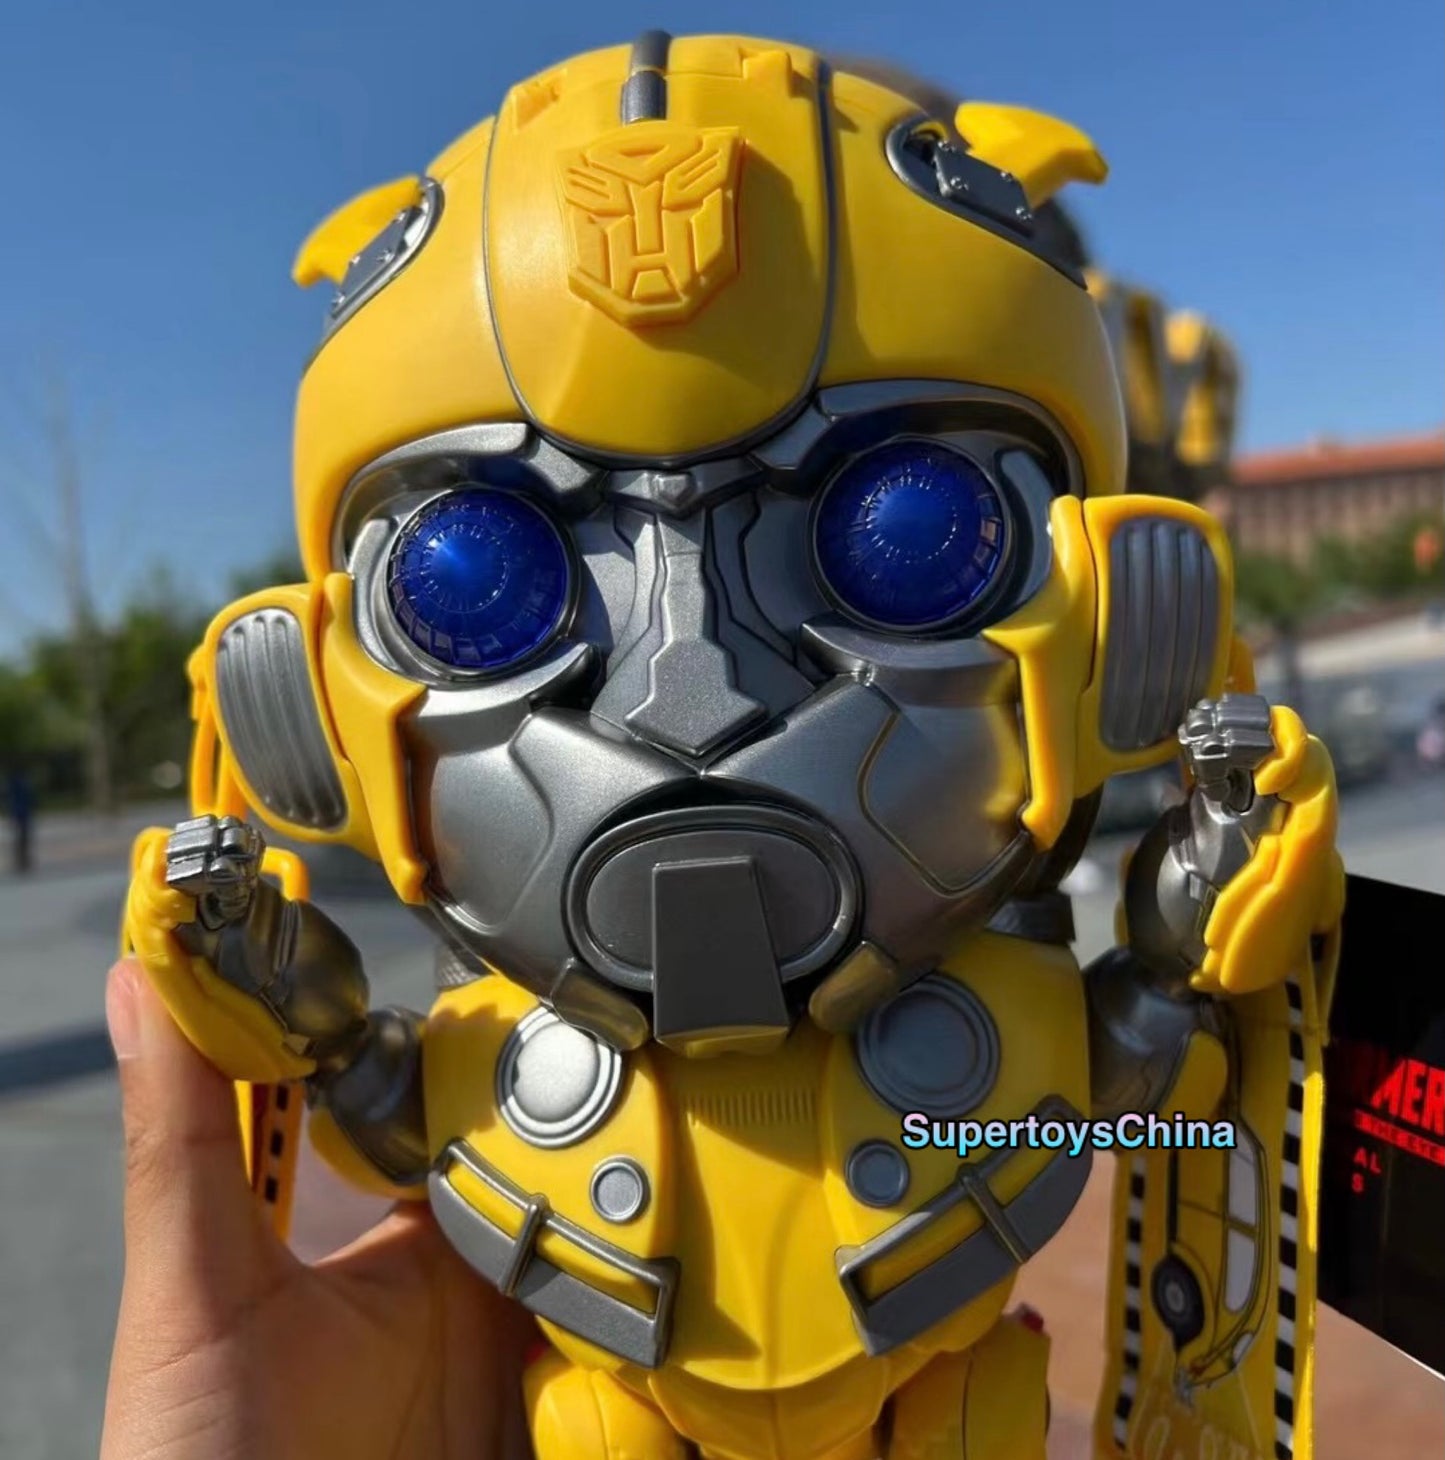 Universal Studios Bumblebee popcorn Bucket eyes light up container